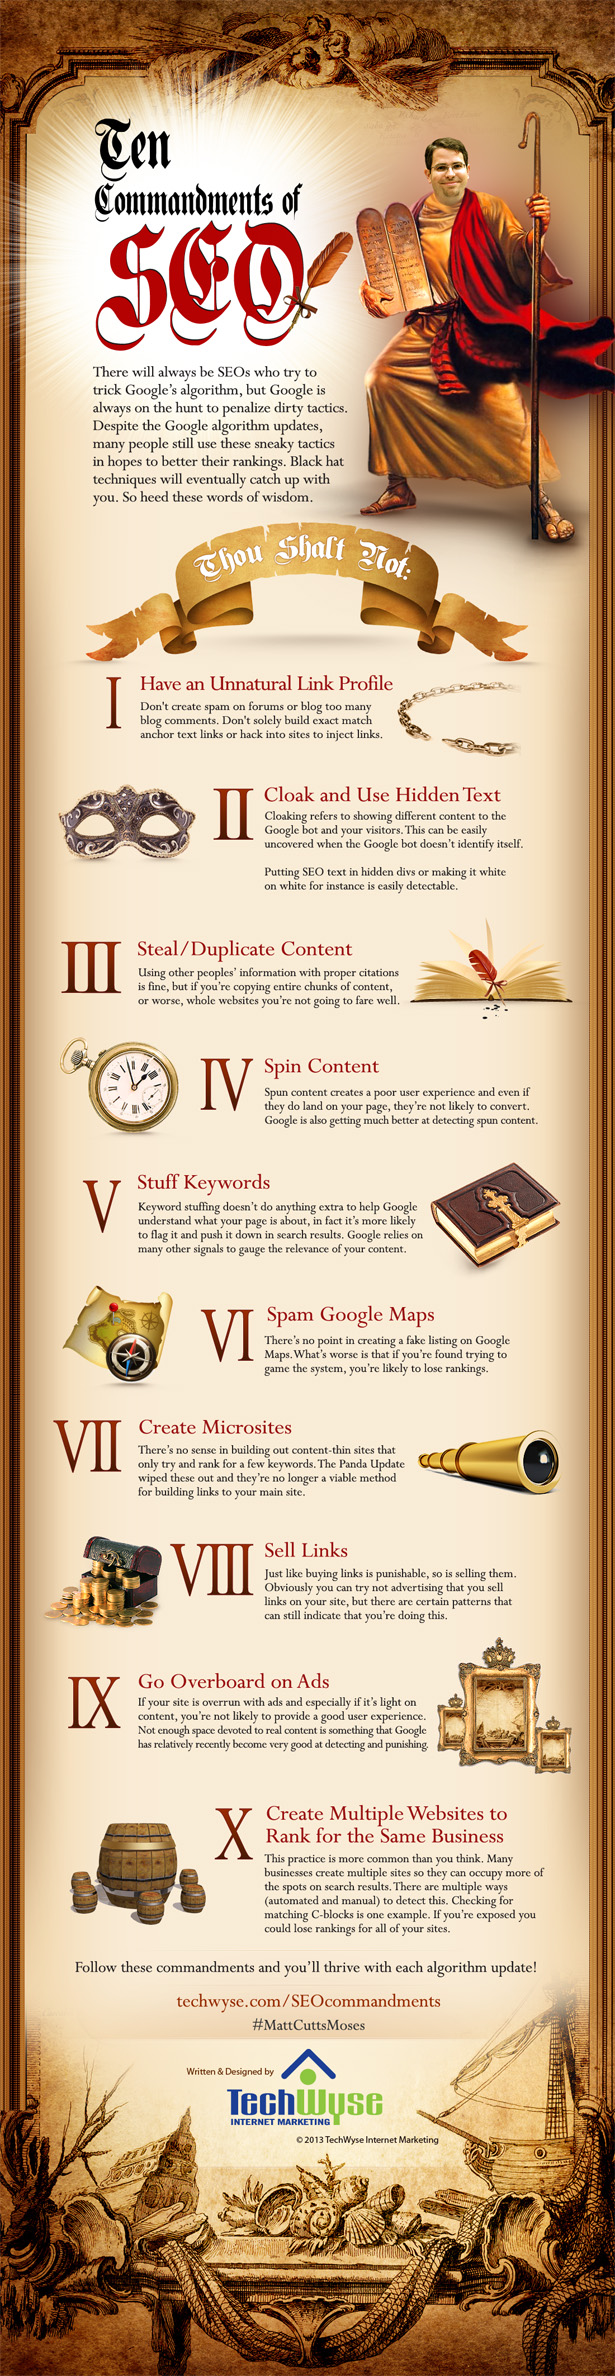 10 Commandments of SEO